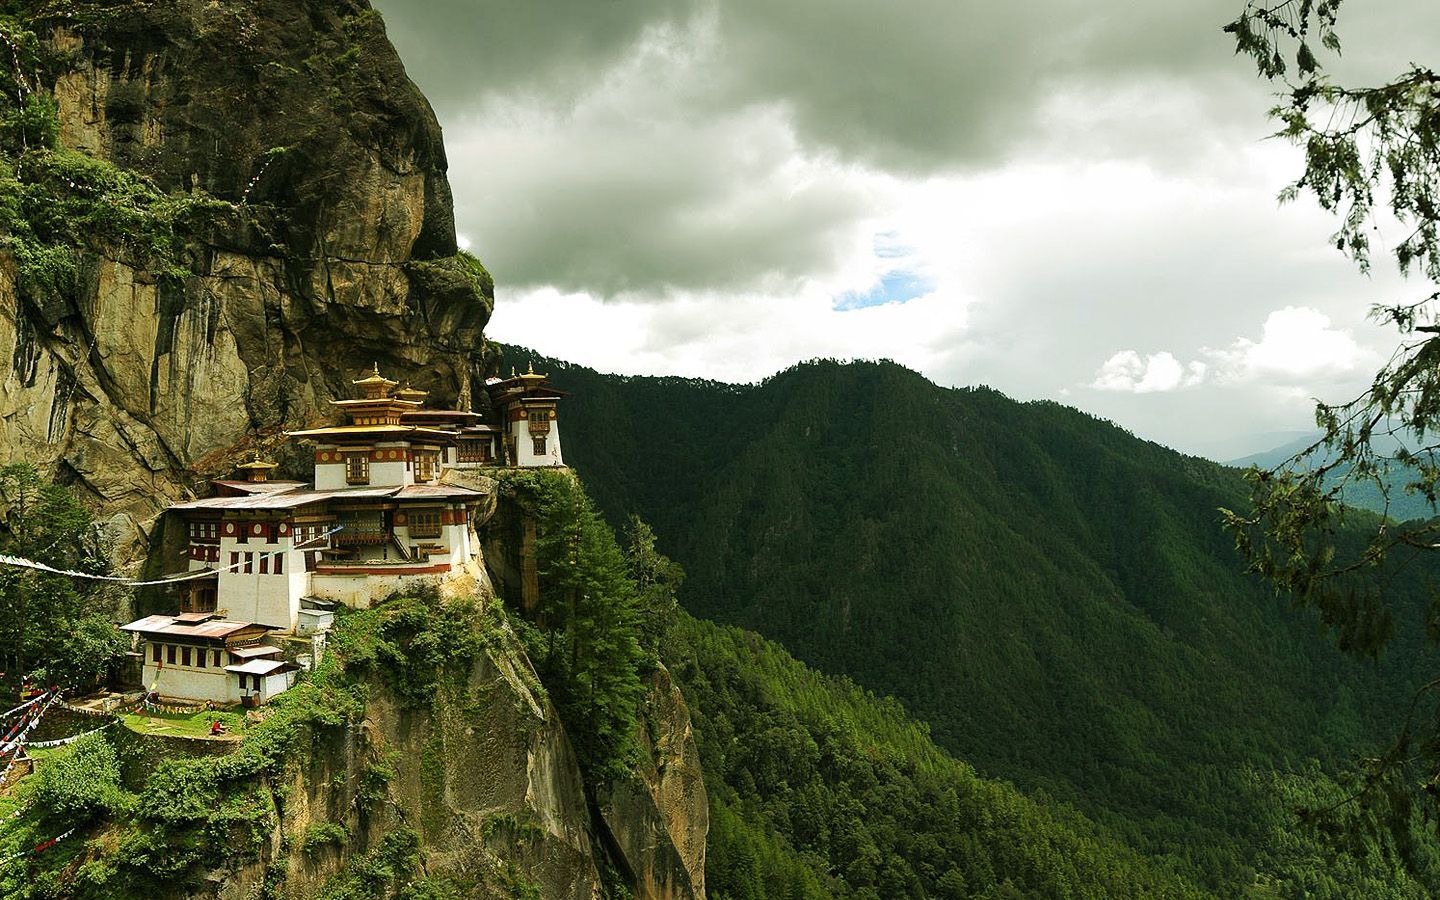 خانه های چینی ساخته شده در کوهستان سرسبز با کیفیت خوب